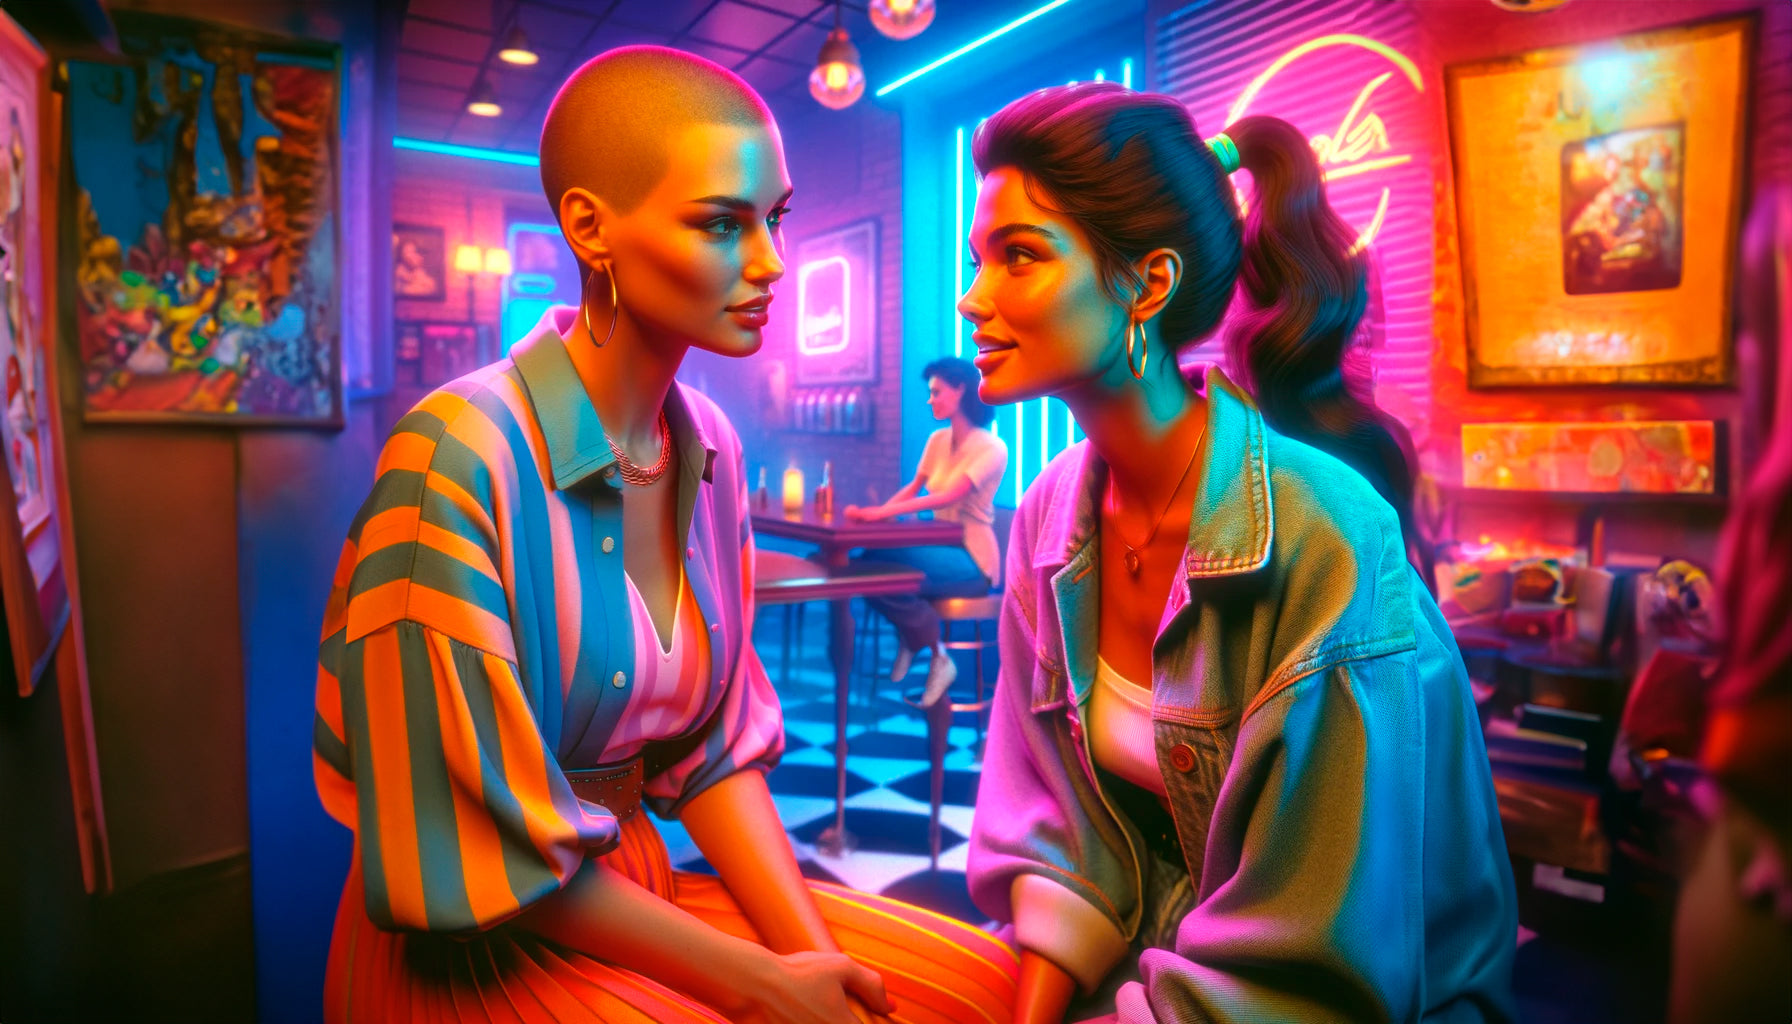 Conto erótico edging surra de xoxota. Arte feita por IA, duas mulheres sentadas conversando se olhando.